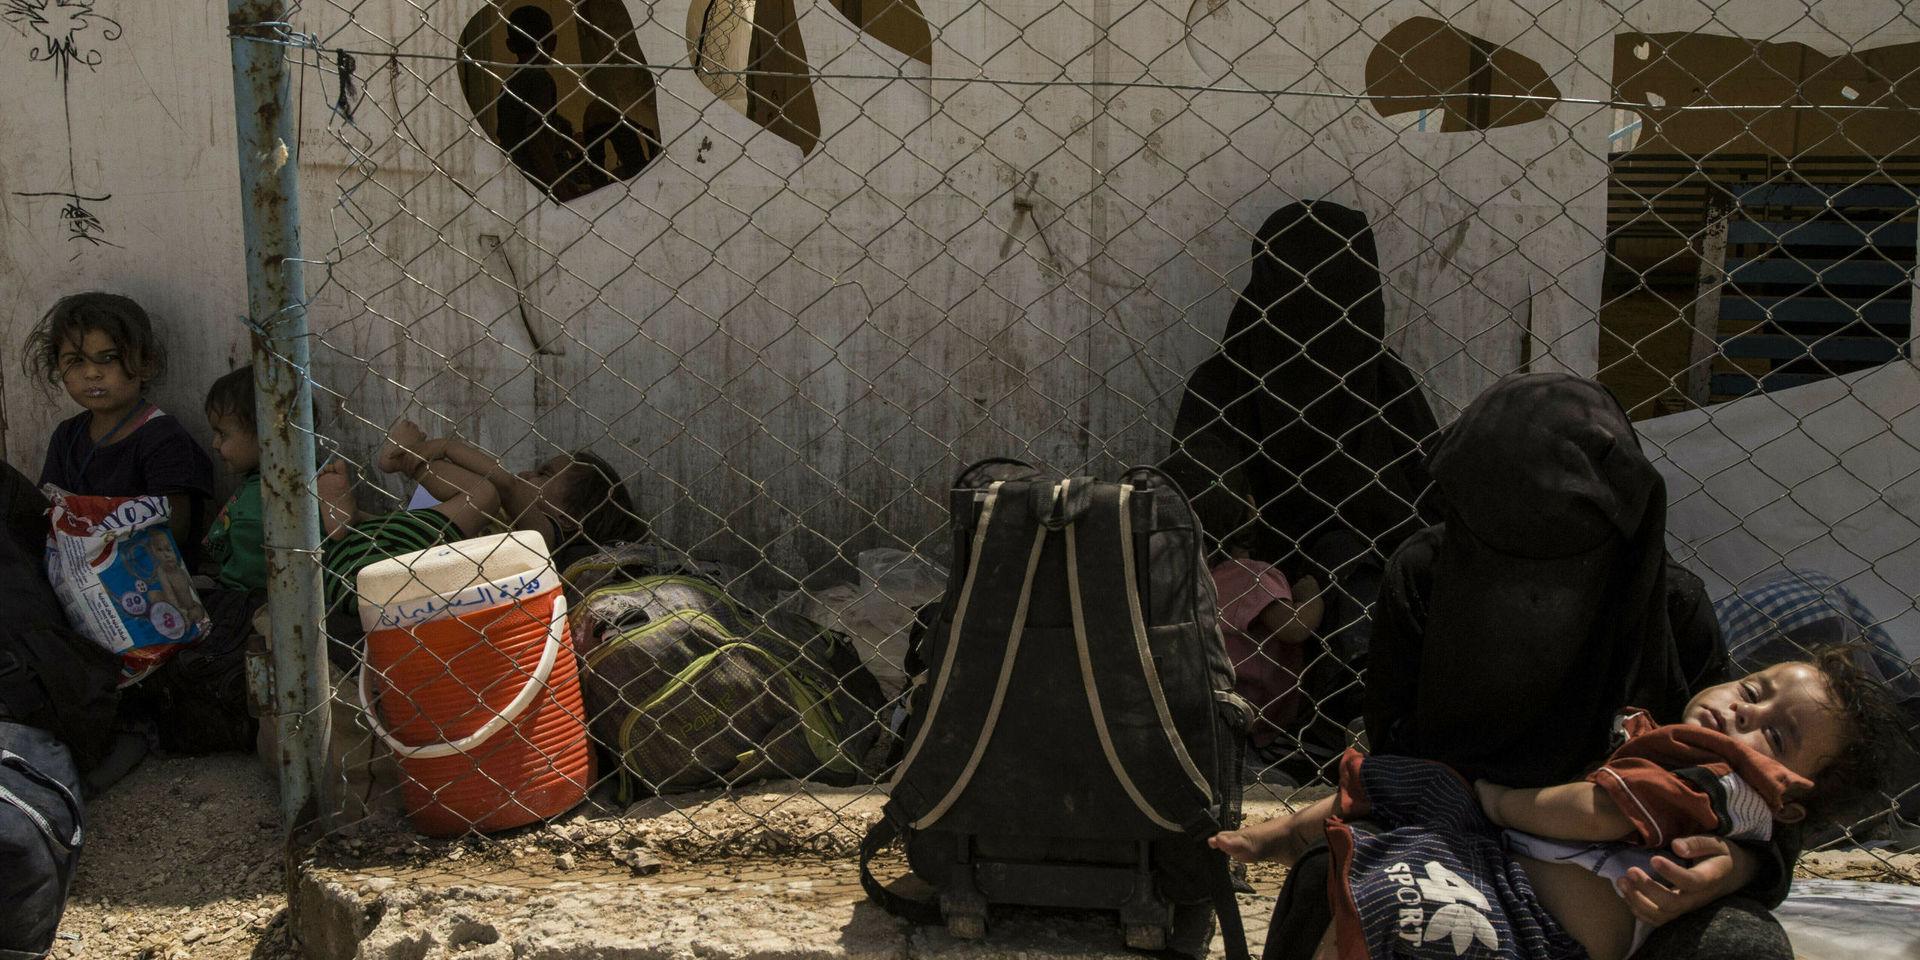 I syriska ökenlägret al-Hol vistas cirka 10 000 utländska medborgare, många av dem från Europa. Runt 100 personer är kvinnor och barn med koppling till Sverige enligt DN. Arkivbild.